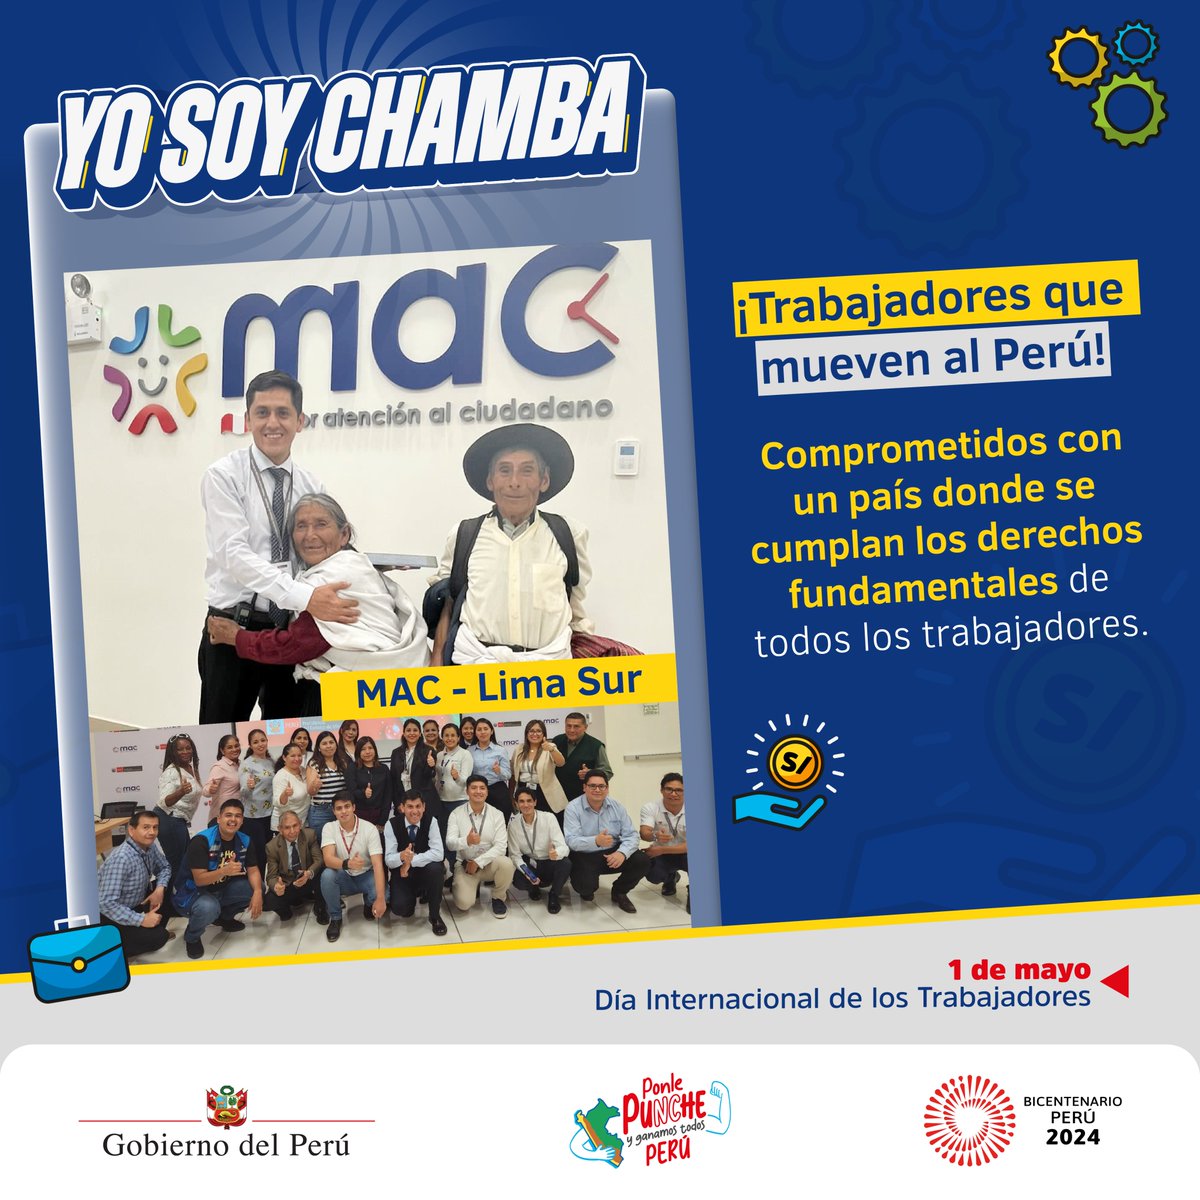 💪 En el #DíaInternacionalDeLosTrabajadores, saludamos a los peruanos que, con su esfuerzo, construyen el Perú que todos anhelamos. 🇵🇪
#YoSoyChamba